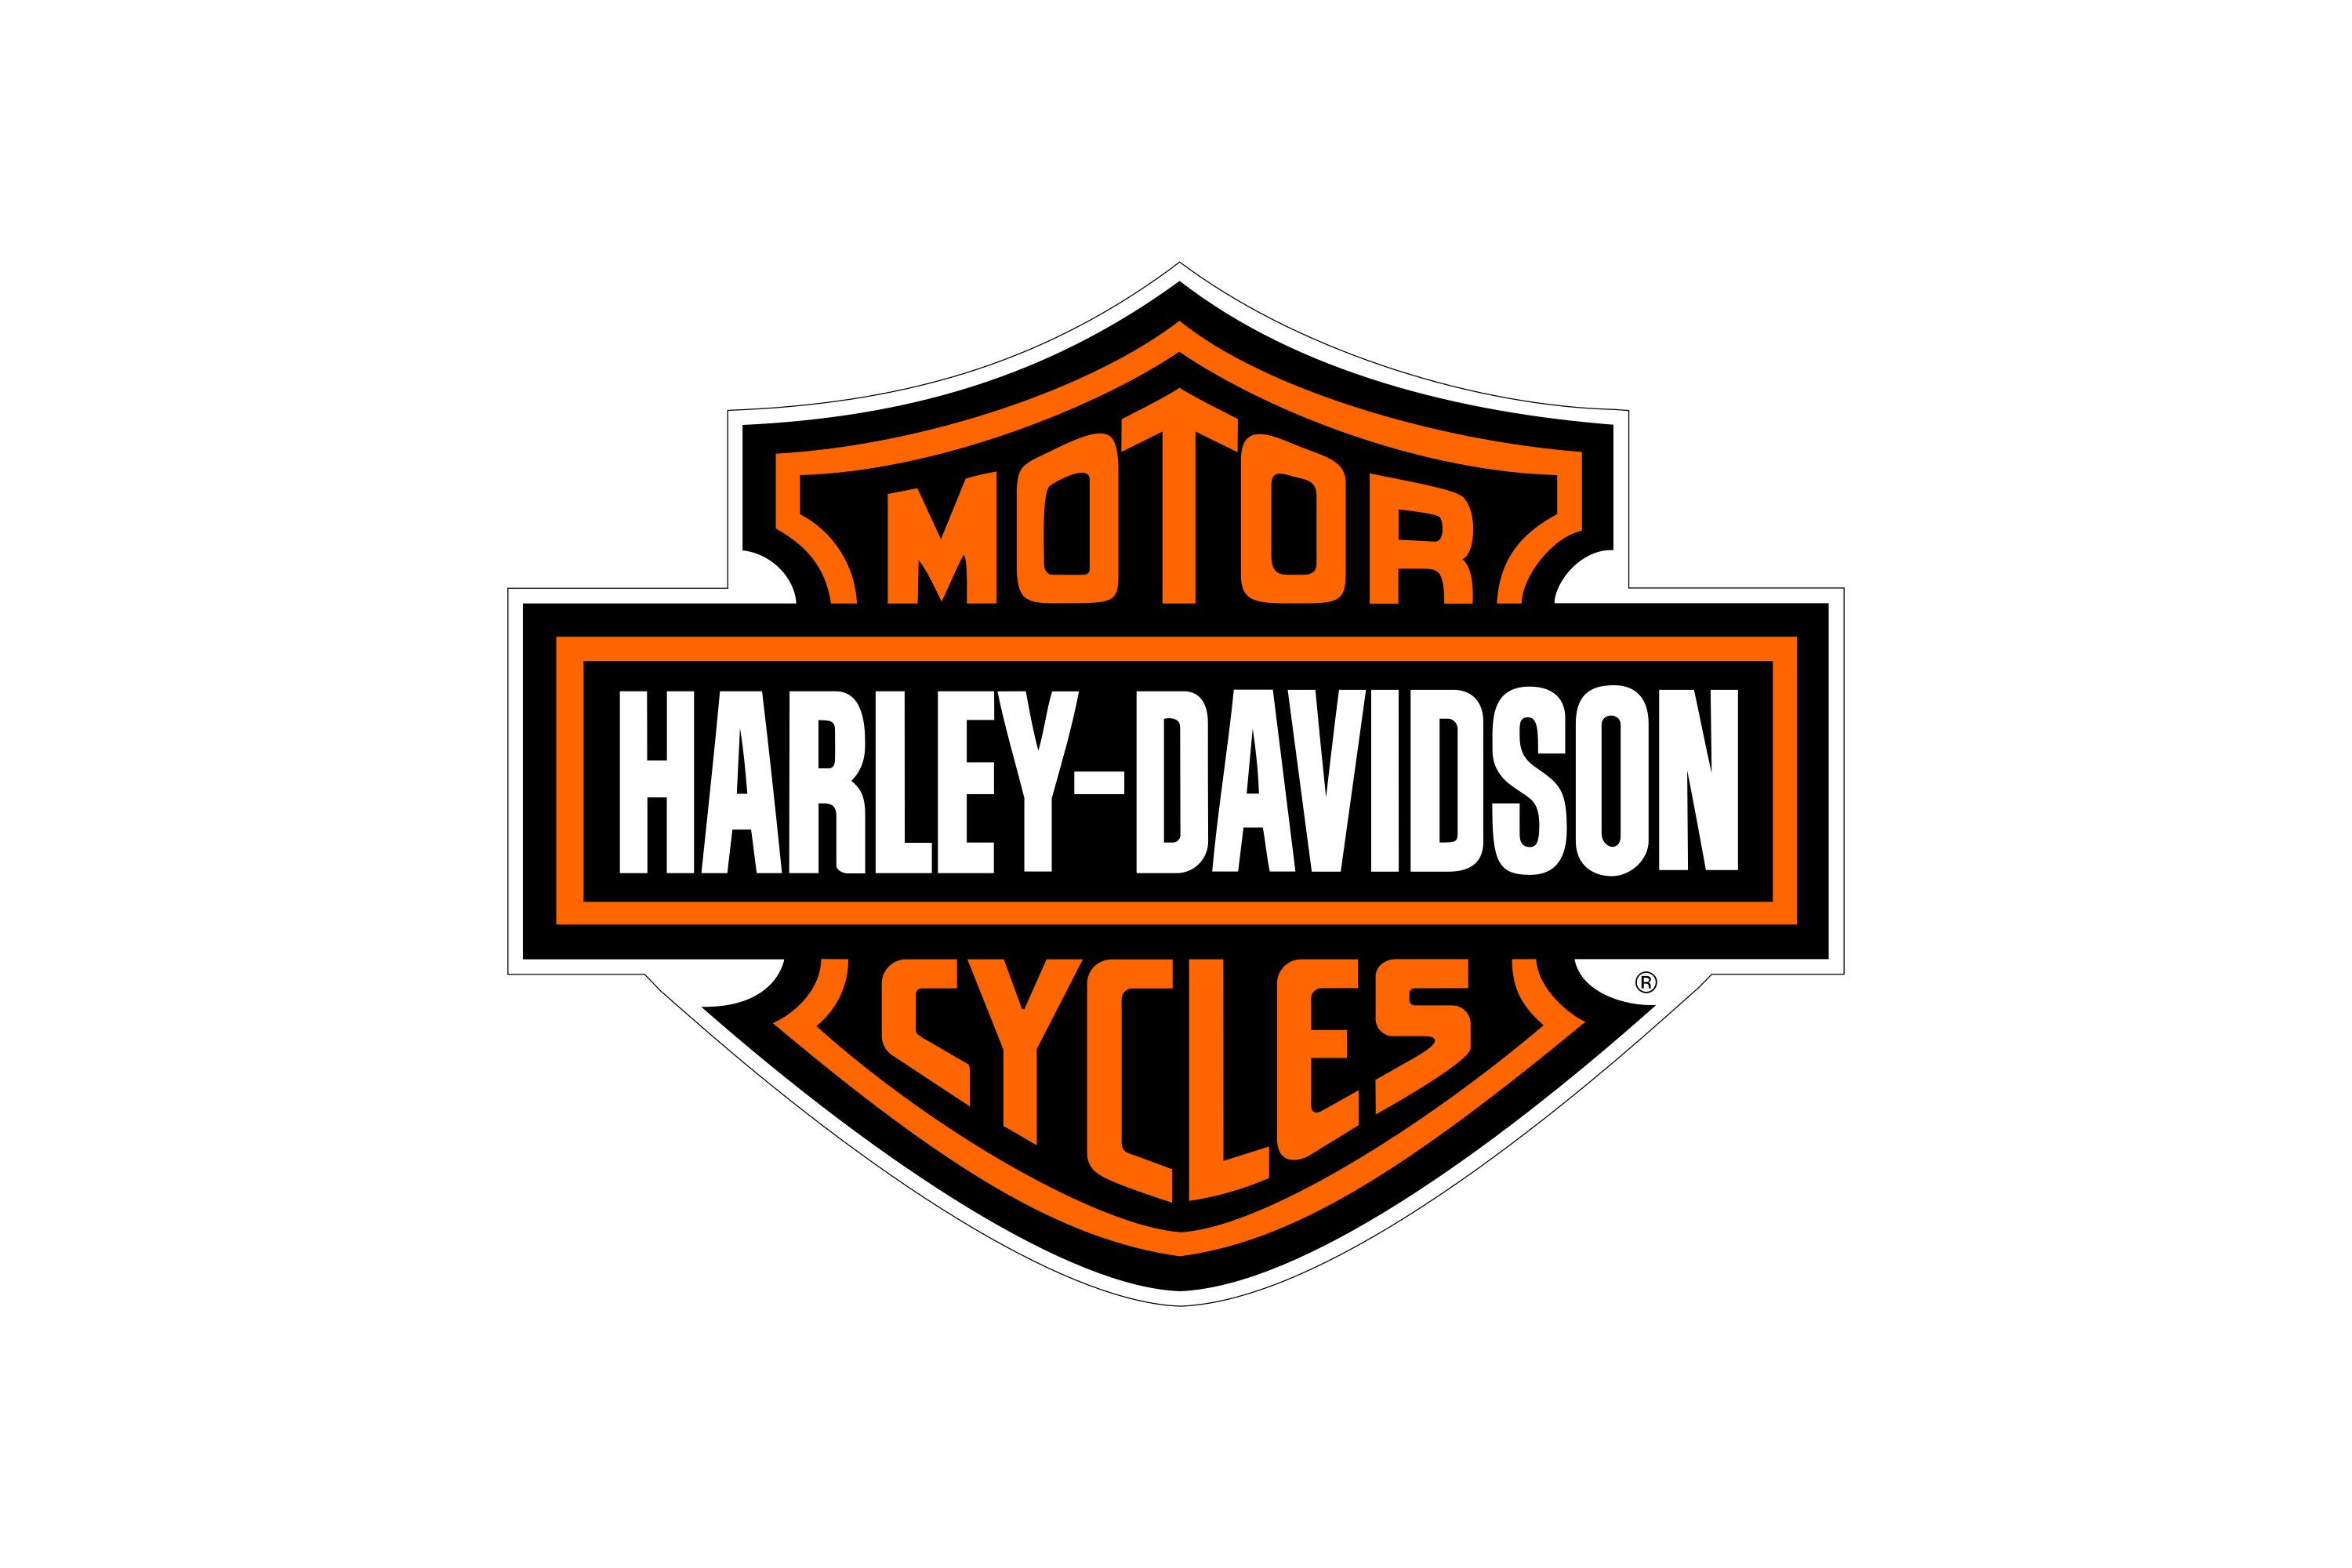 Download Harley-Davidson Logo in SVG Vector or PNG File Format - Logo.wine